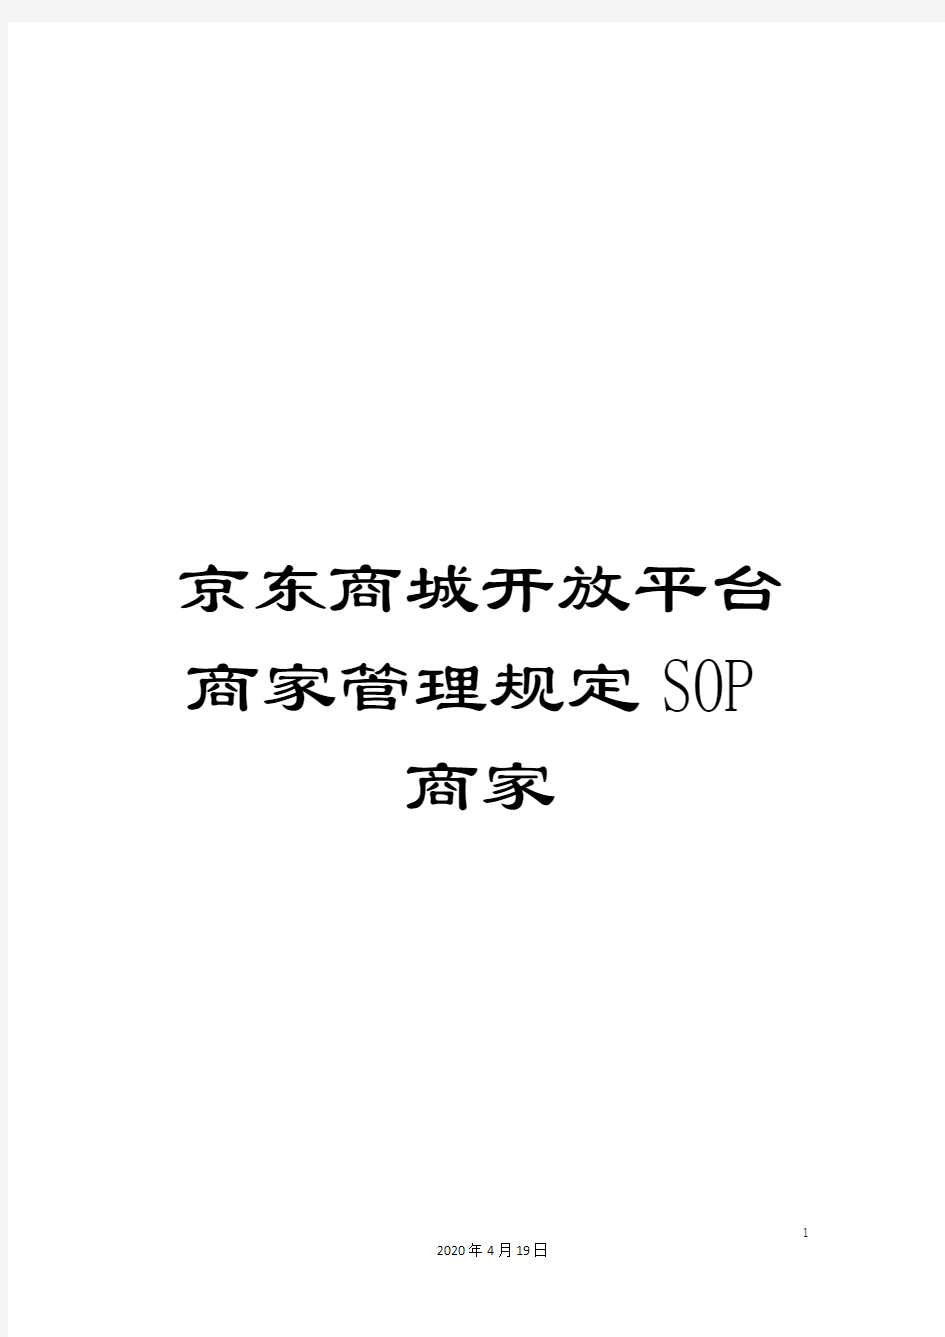 京东商城开放平台商家管理规定SOP商家